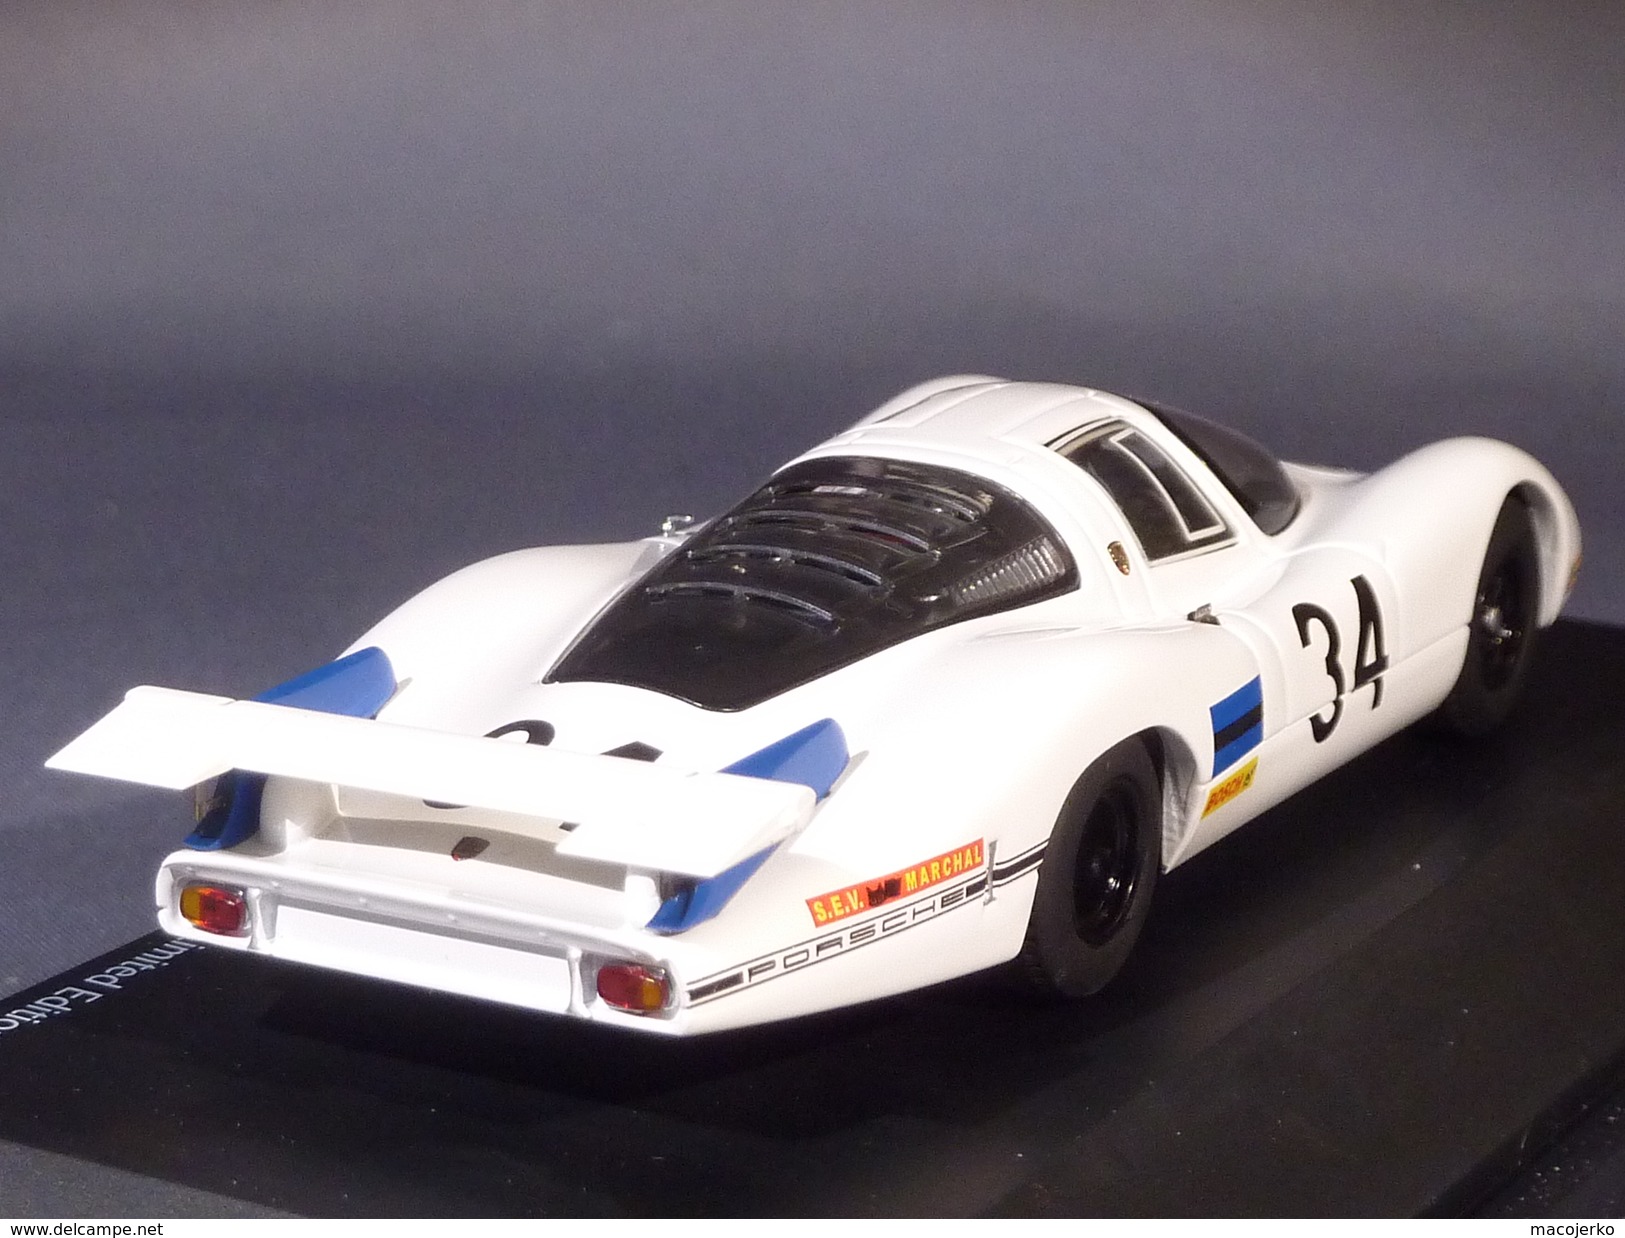 Schuco  03720, Porsche 908 #34 Le Mans 1968, Buzzetta - Scooter, 1:43 - Schuco